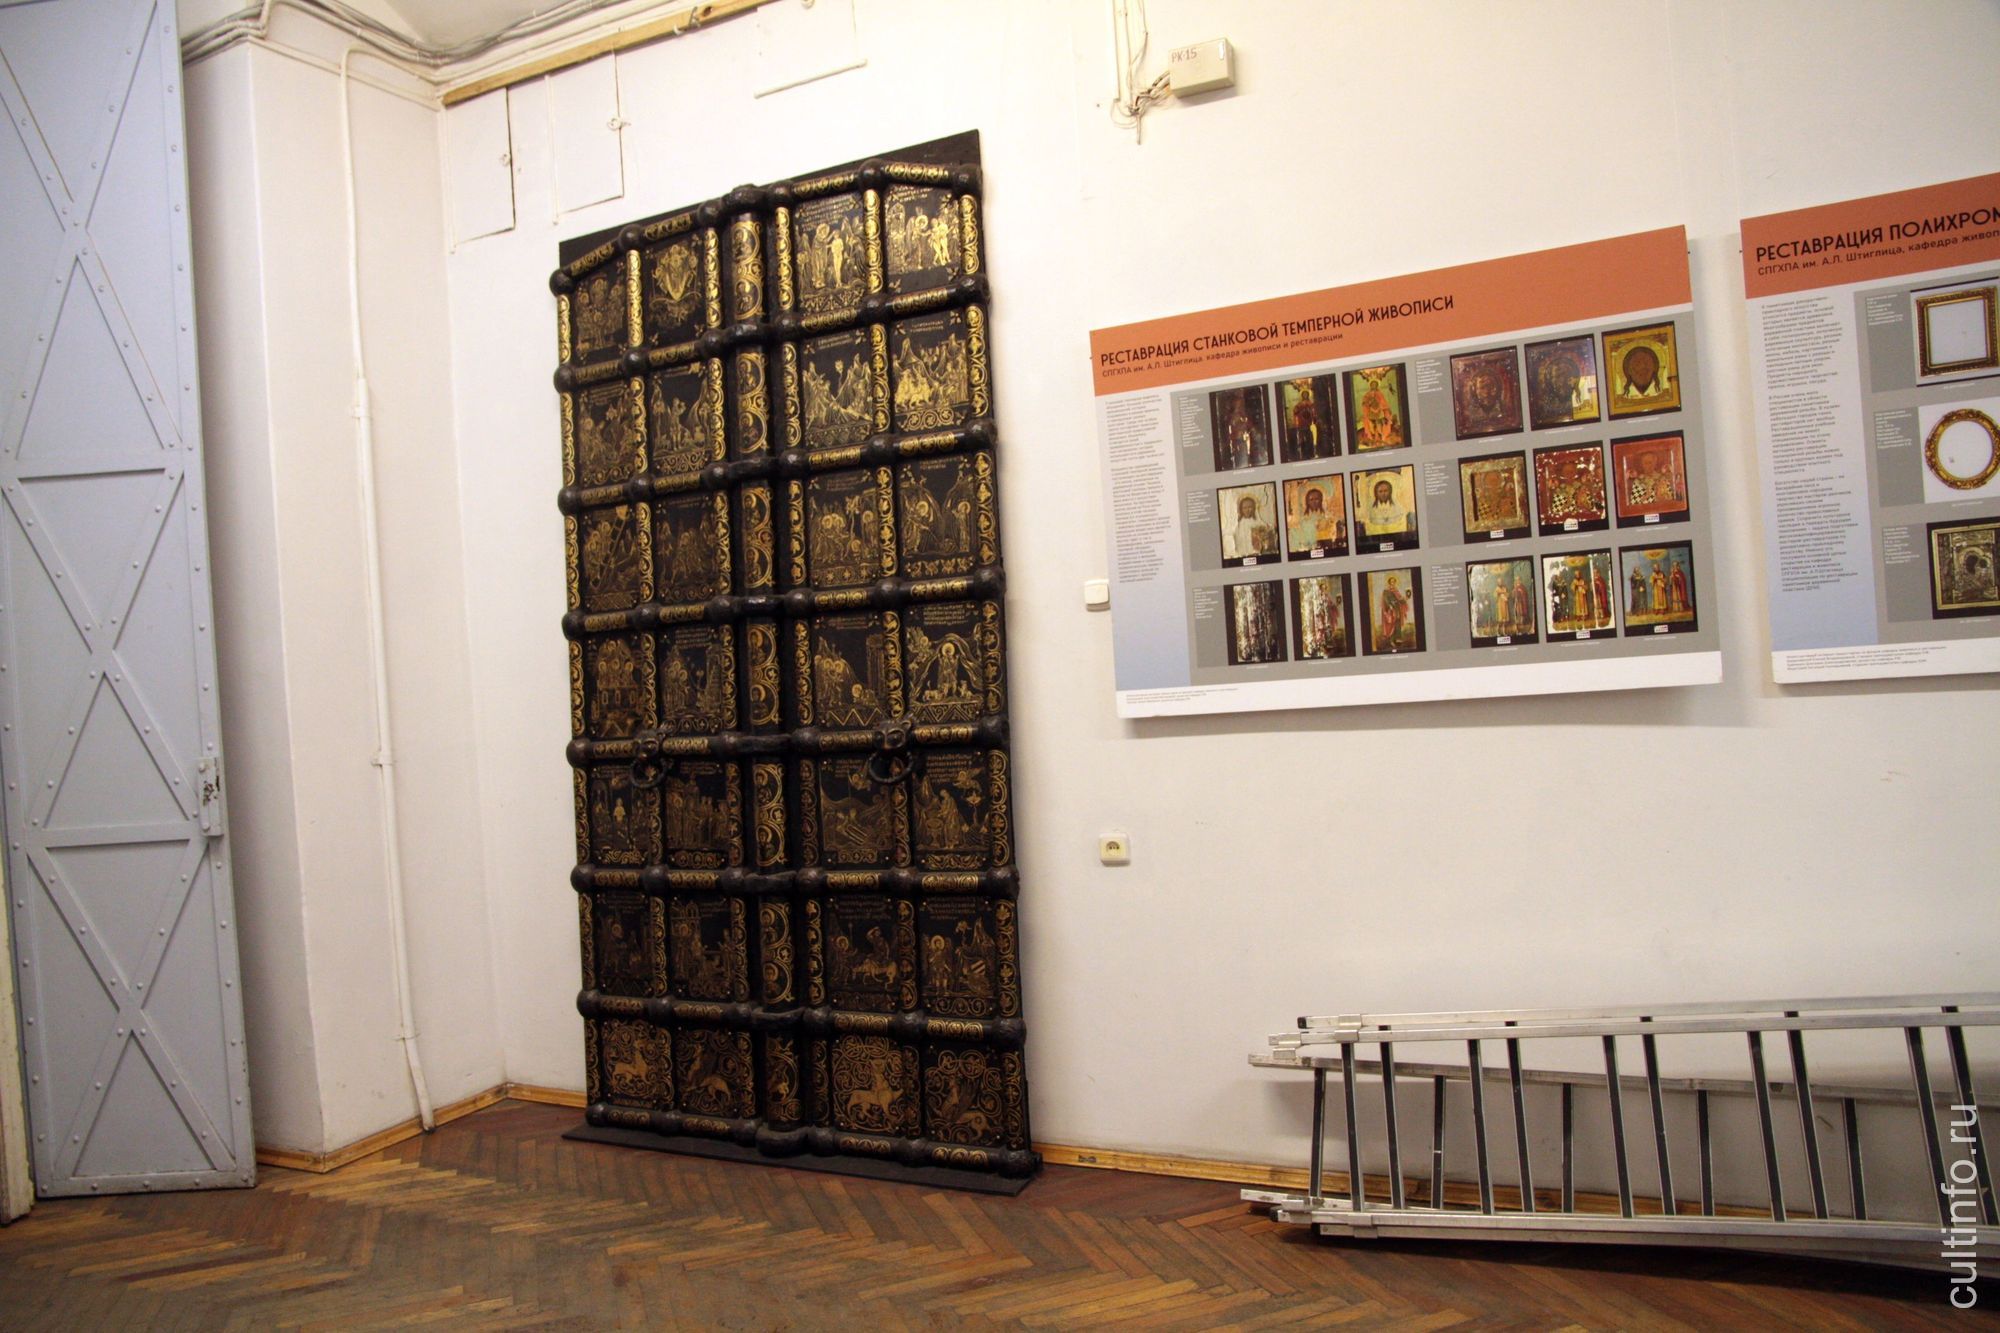 Копия царских врат из суздальской церкви, выполненная студентами из подручных материалов в натуральную величину. 